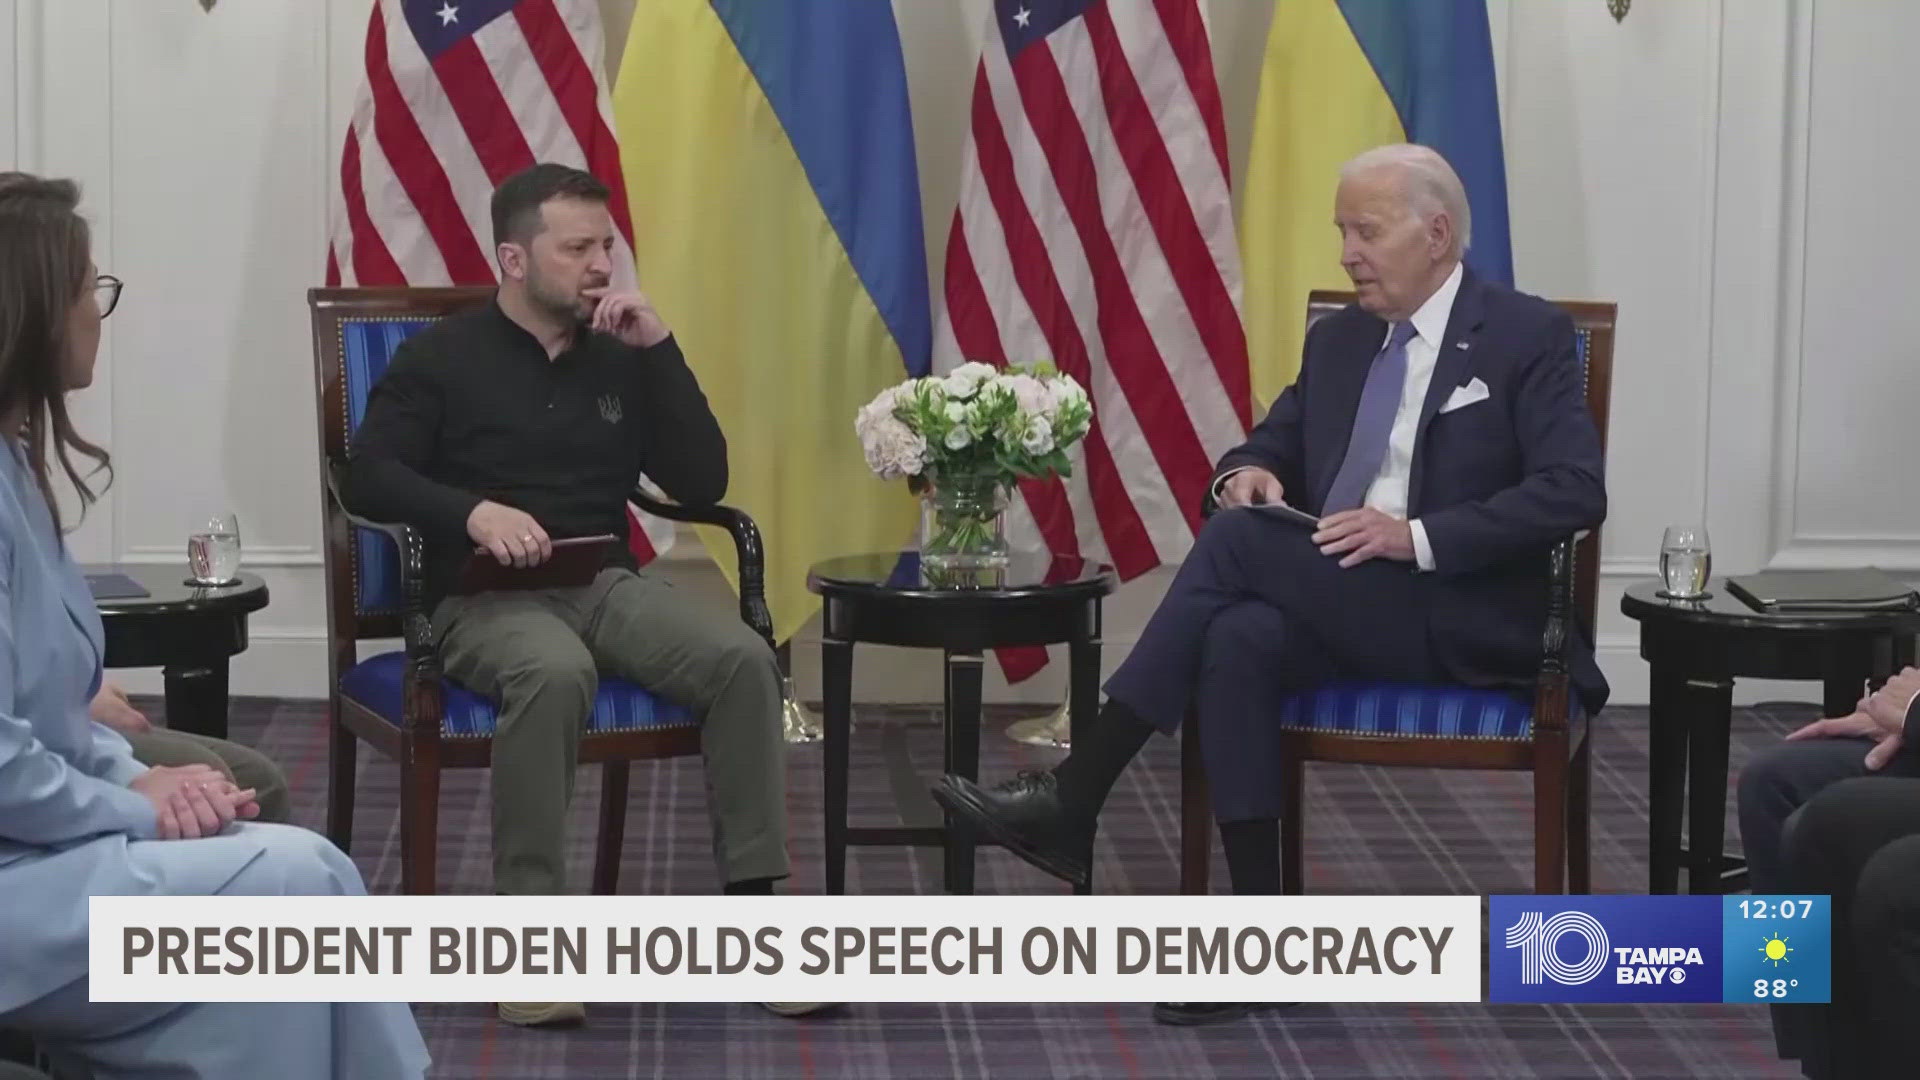 Biden held a speech on democracy following the continued Ukrainian war.